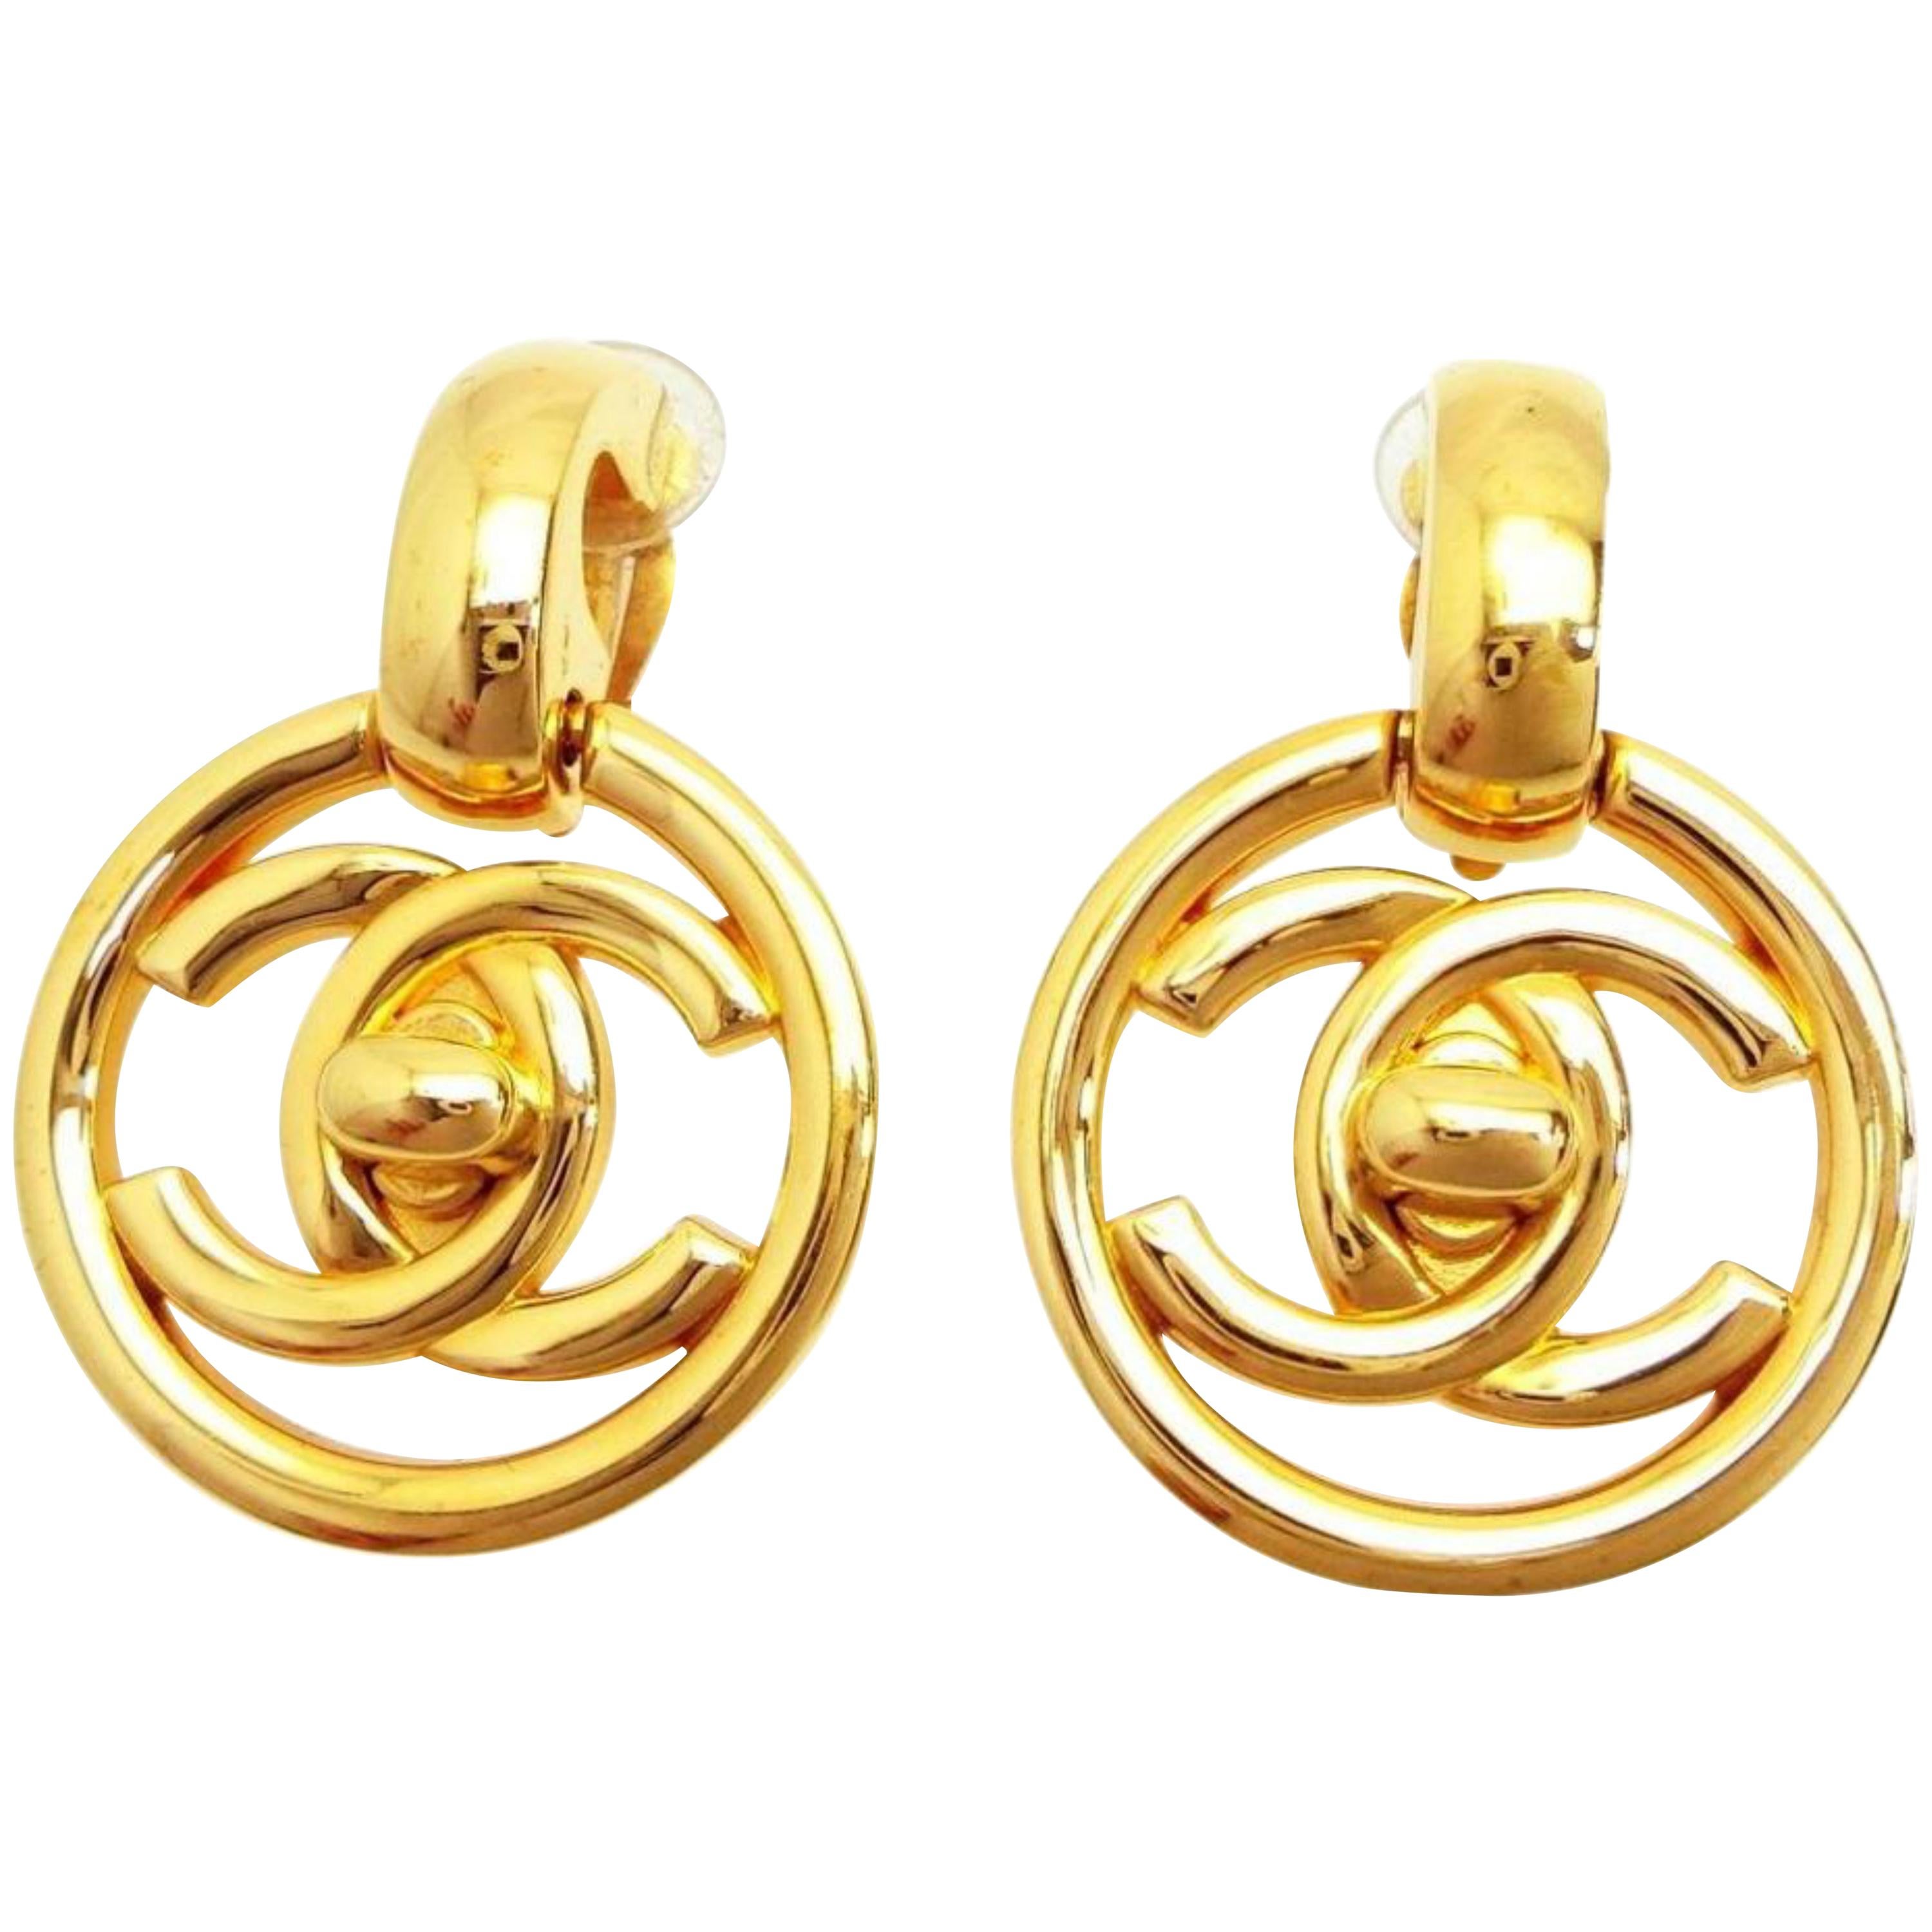 Chanel Turn Lock Earrings - 4 For Sale on 1stDibs